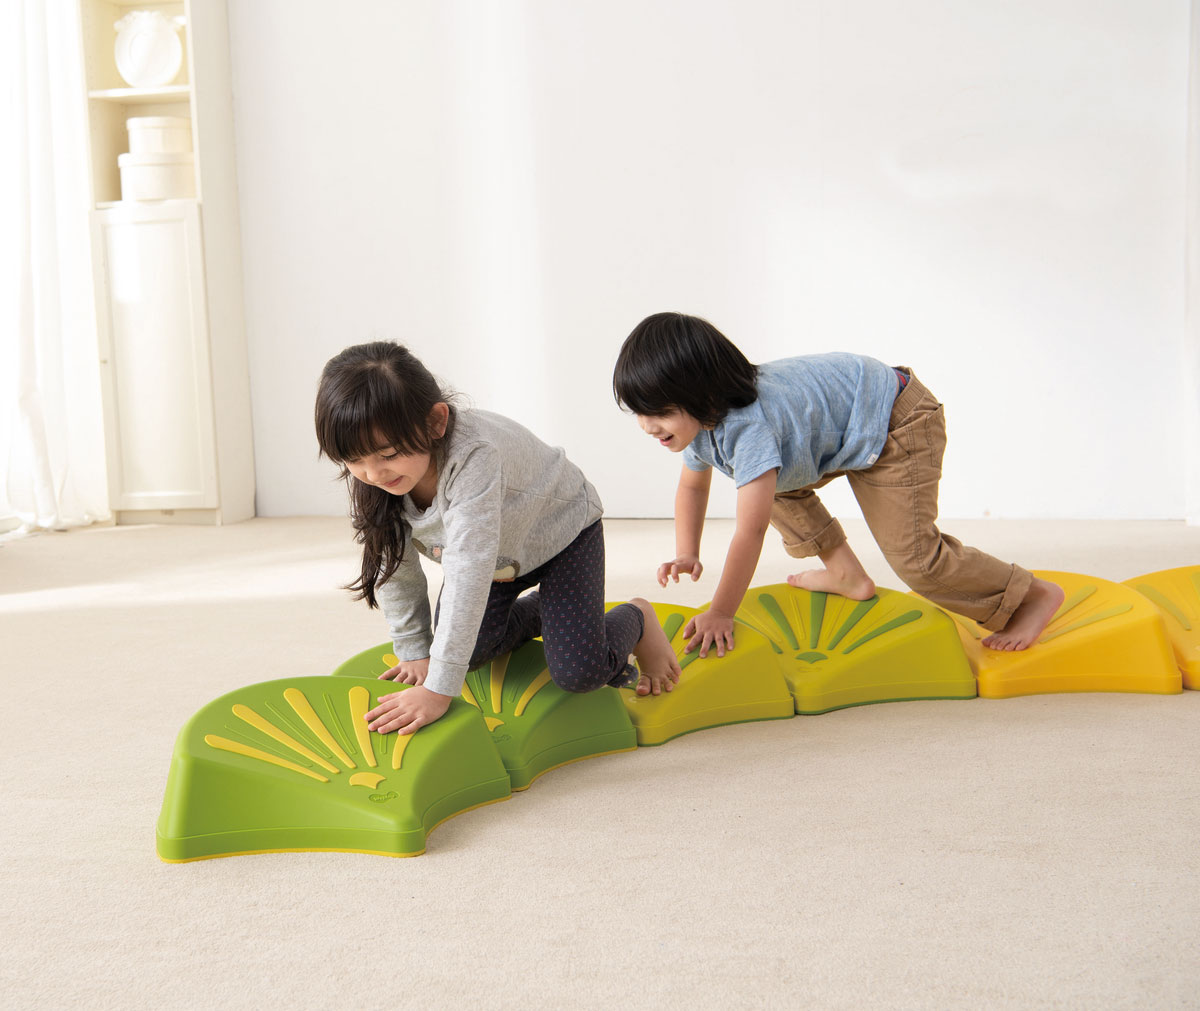 Bewegungsräume – Ein Mädchen und ein Junge klettern über einen Weg aus bunten Plastikmuscheln am Boden.